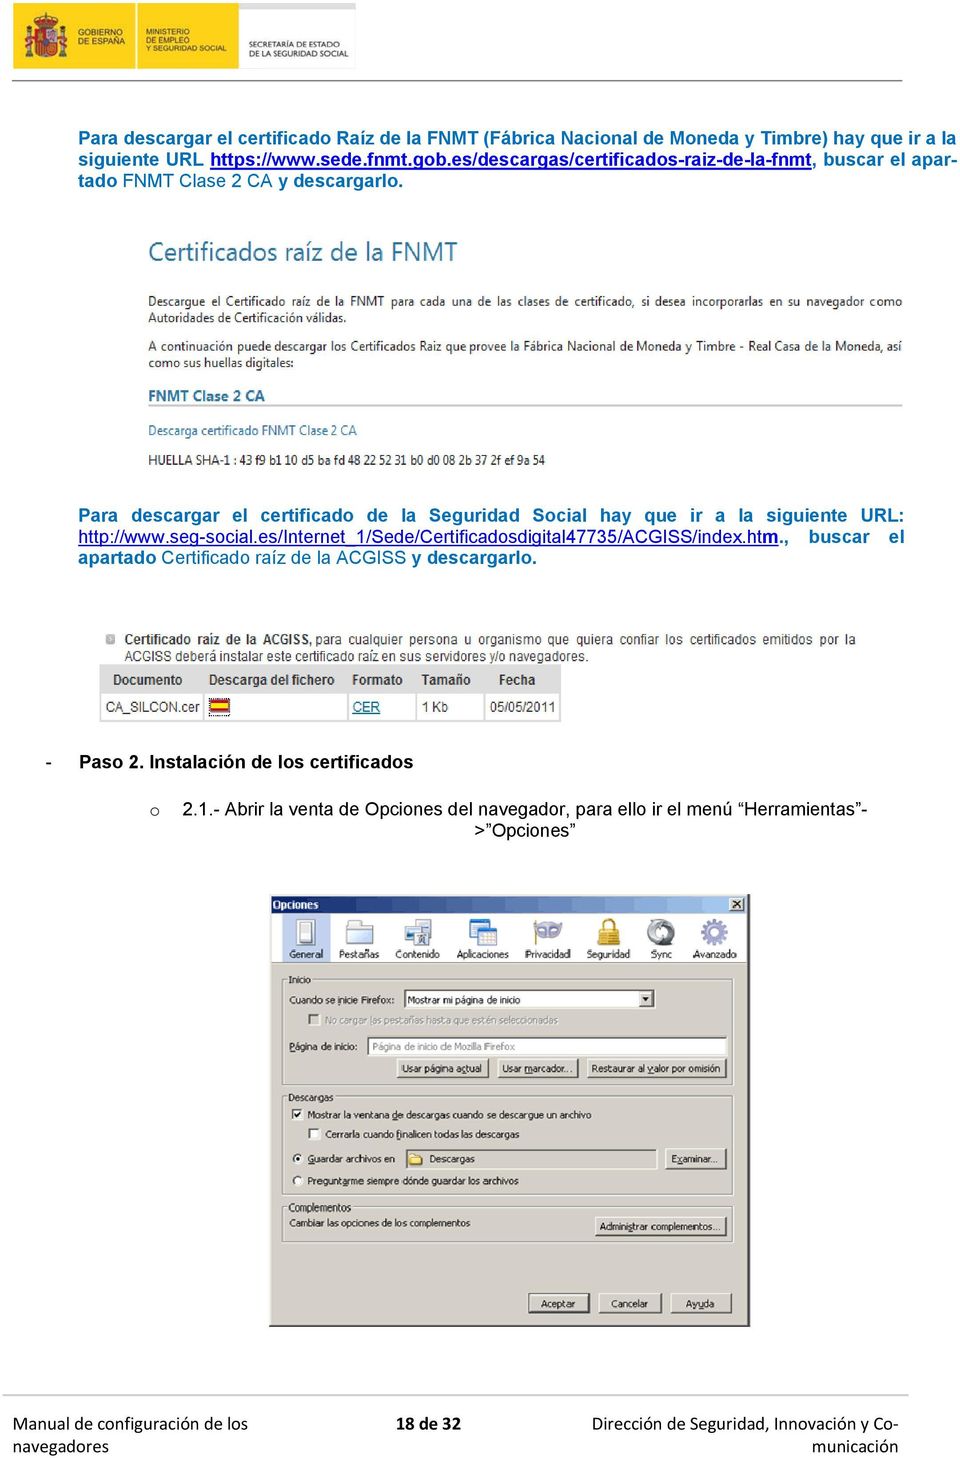 Para descargar el certificado de la Seguridad Social hay que ir a la siguiente URL: http://www.seg-social.es/internet_1/sede/certificadosdigital47735/acgiss/index.